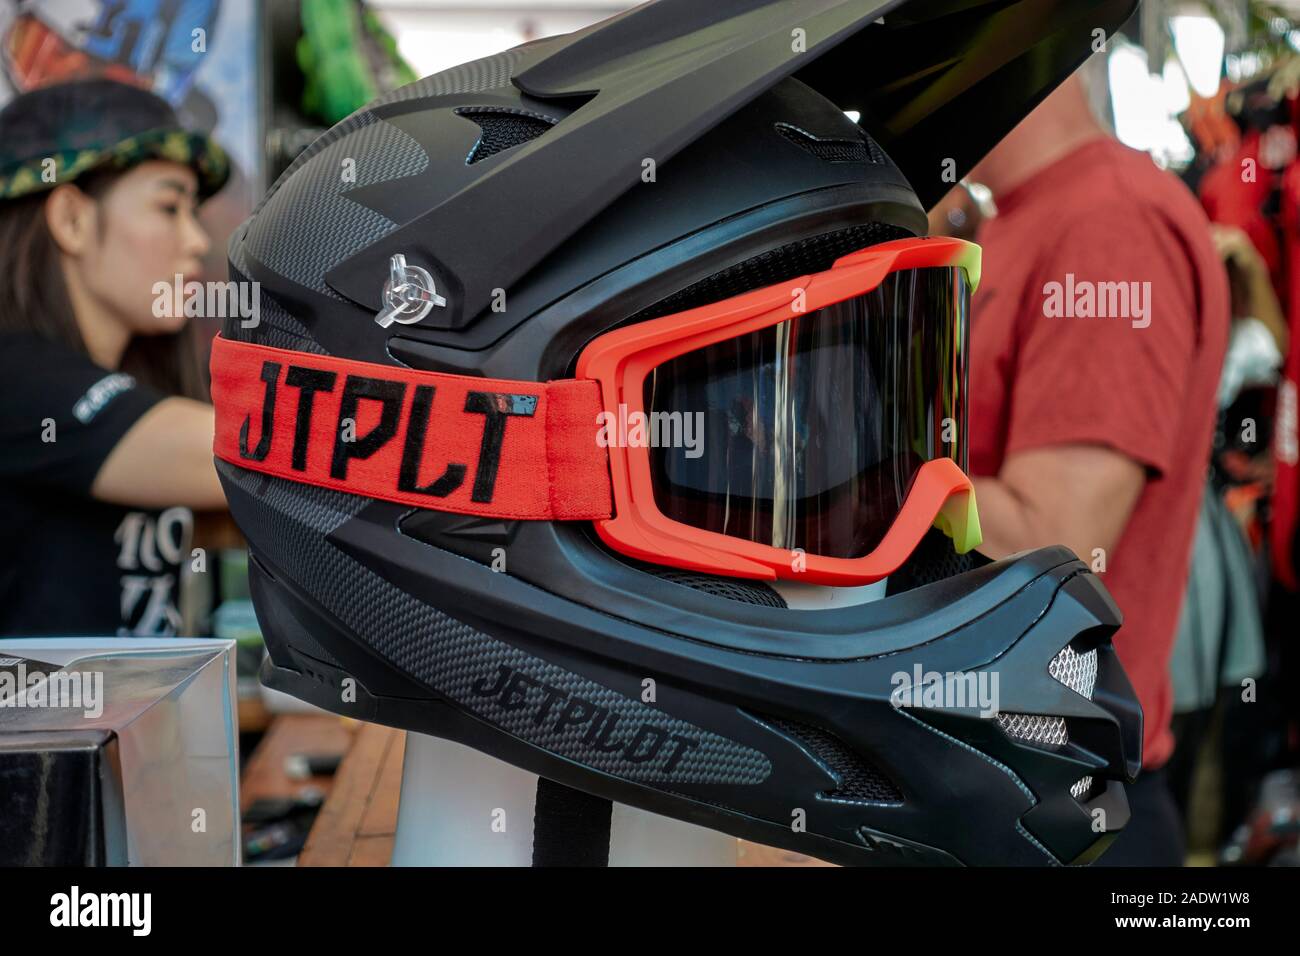 Casque de sécurité sport- facial, de la protection de la tête pour le jet ski, moto, moto ou rider Banque D'Images